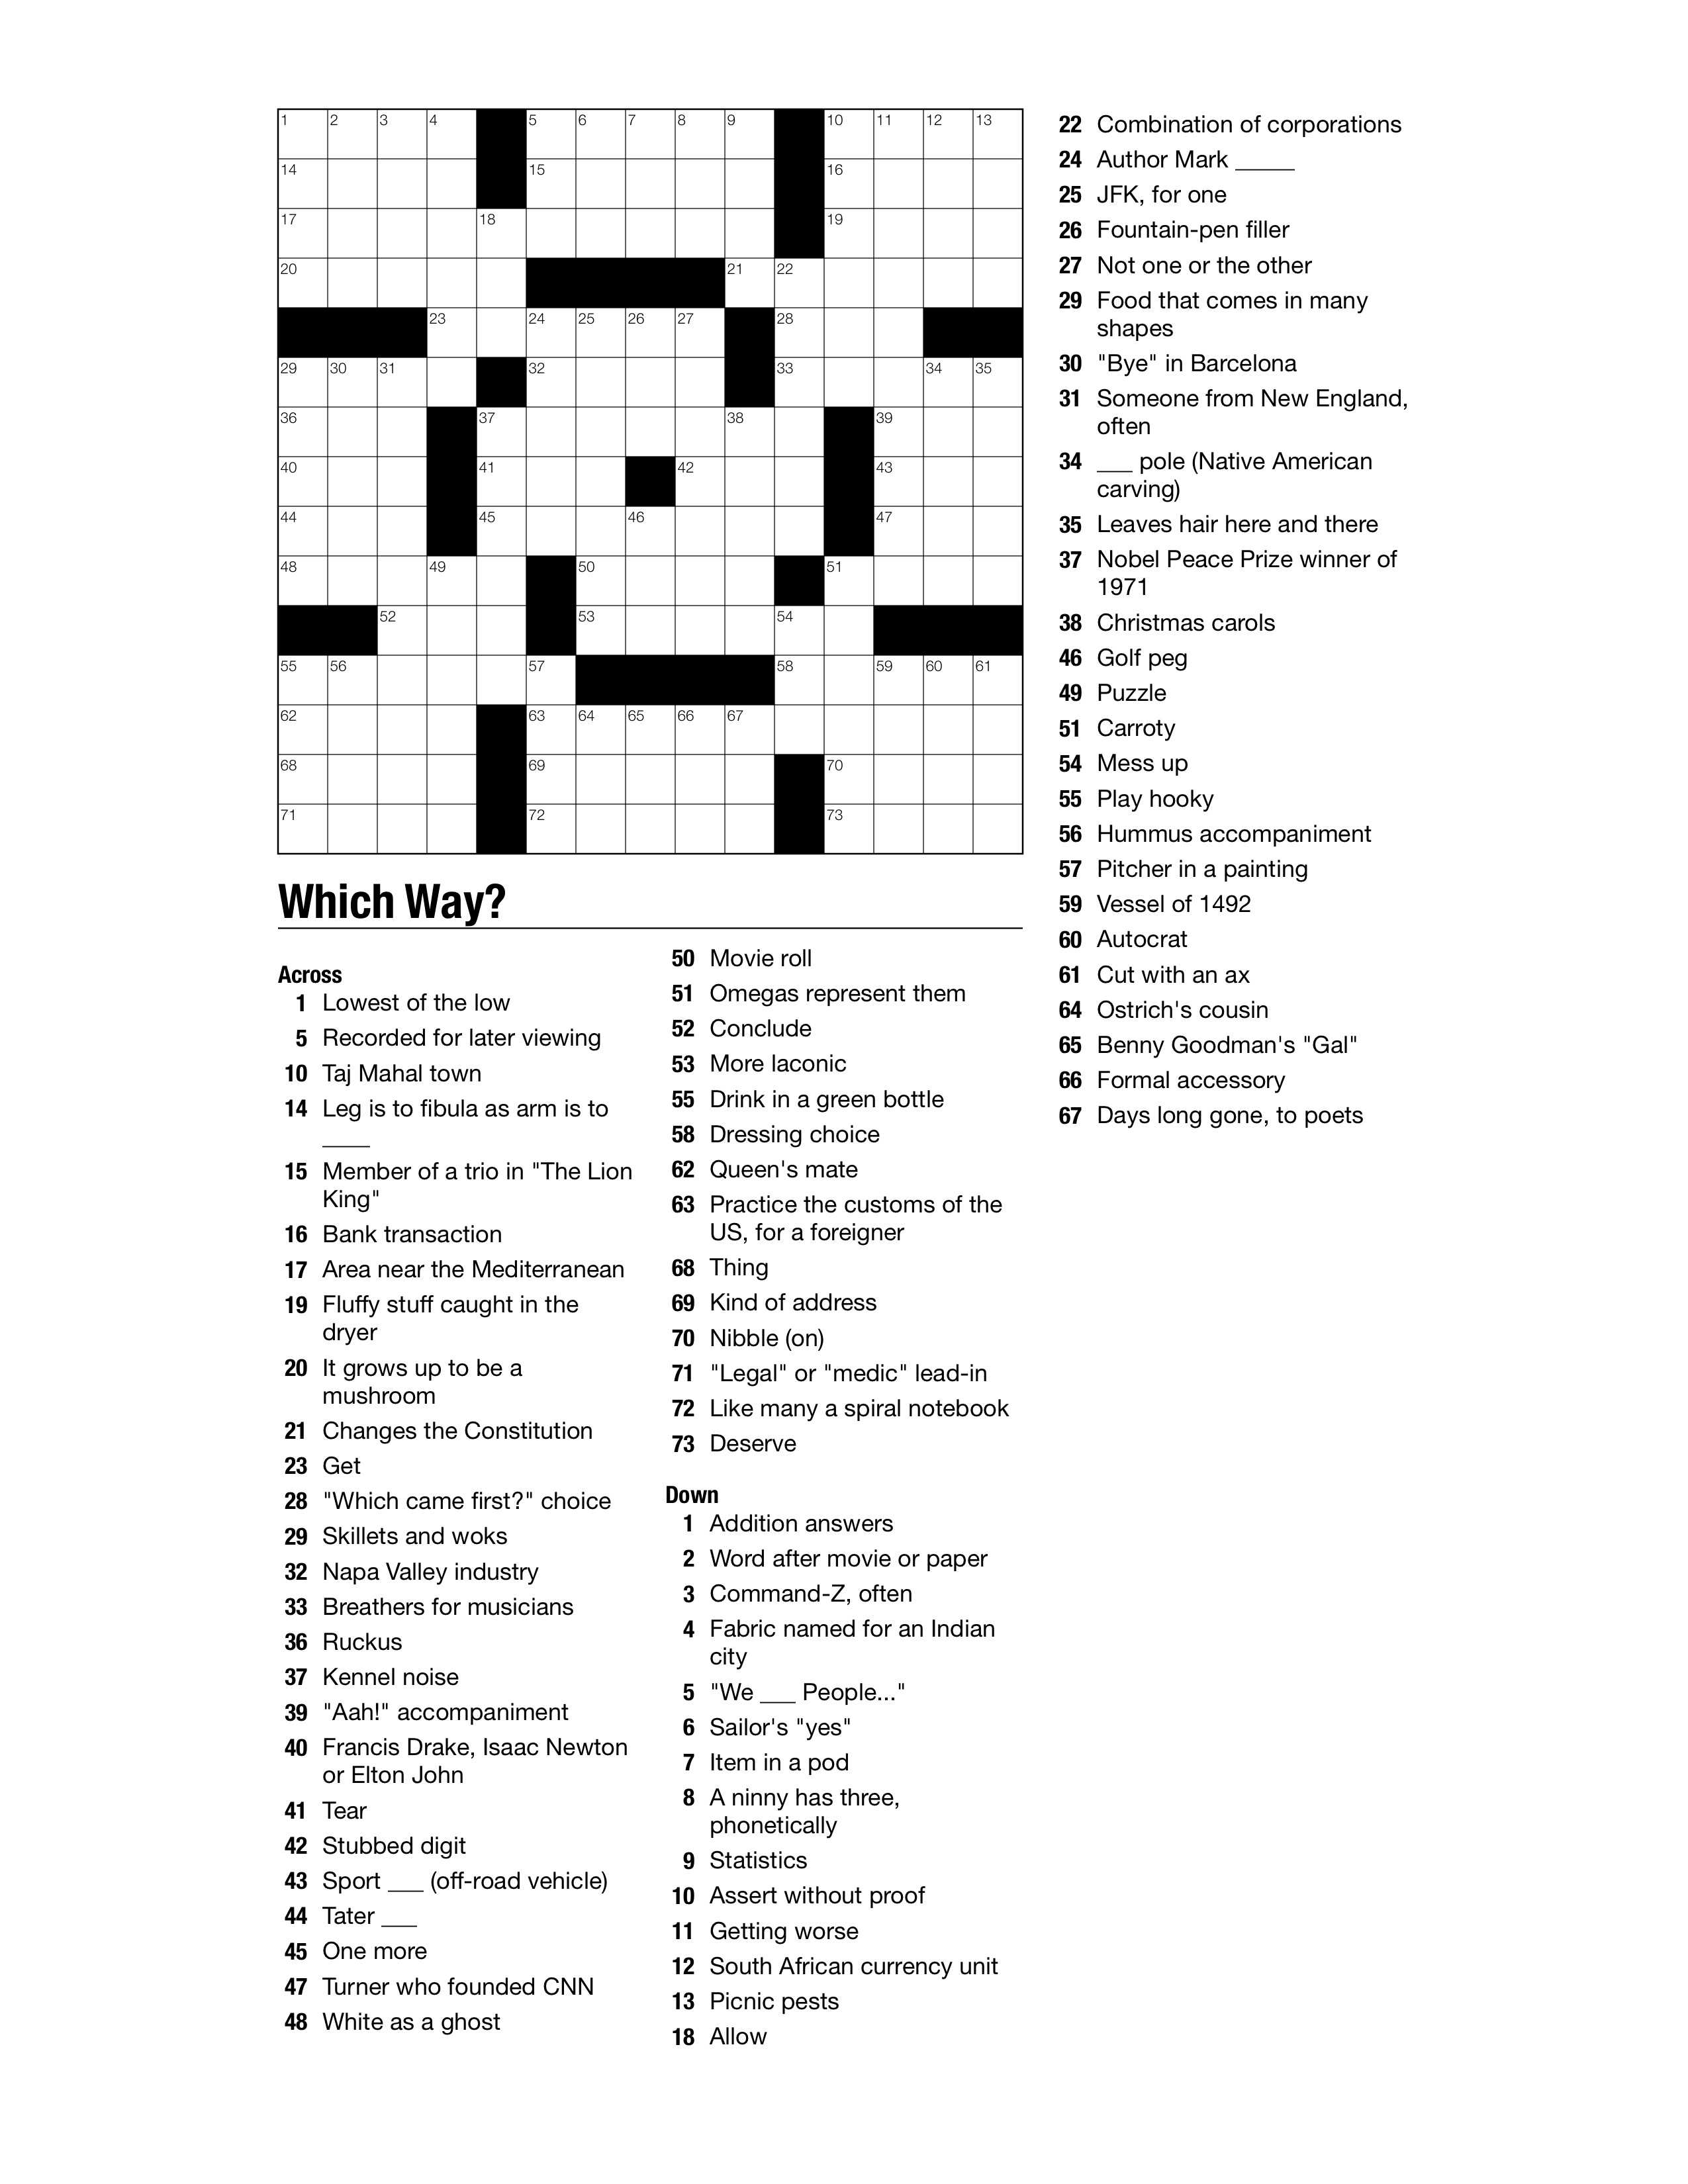 crosswordpuzzles readwrite think